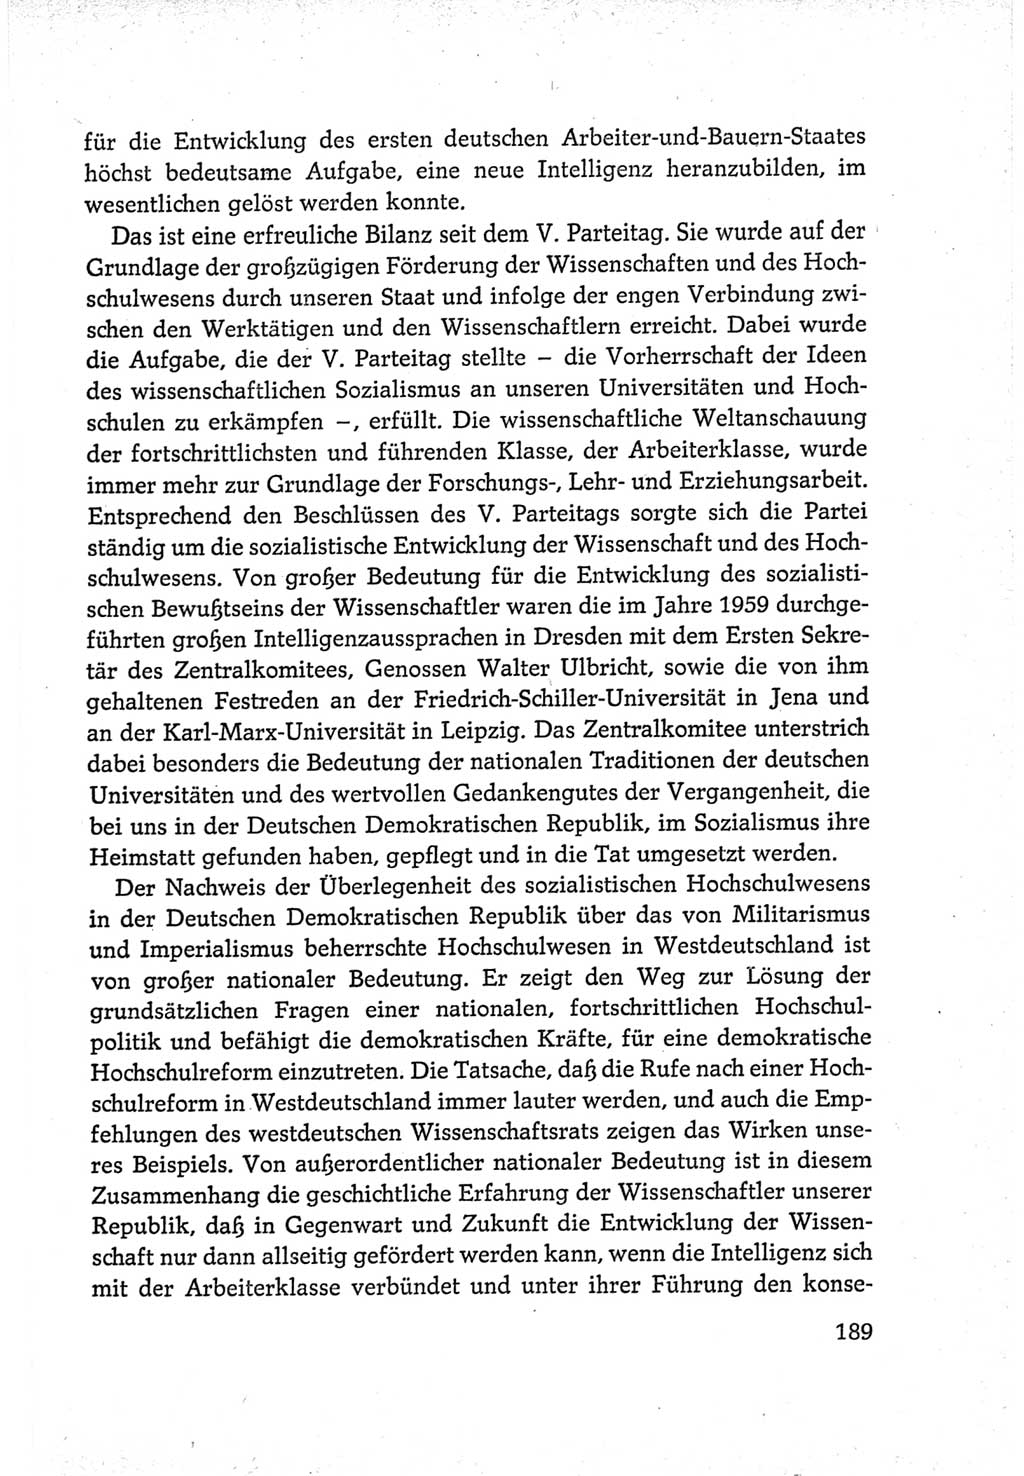 Protokoll der Verhandlungen des Ⅵ. Parteitages der Sozialistischen Einheitspartei Deutschlands (SED) [Deutsche Demokratische Republik (DDR)] 1963, Band Ⅳ, Seite 189 (Prot. Verh. Ⅵ. PT SED DDR 1963, Bd. Ⅳ, S. 189)